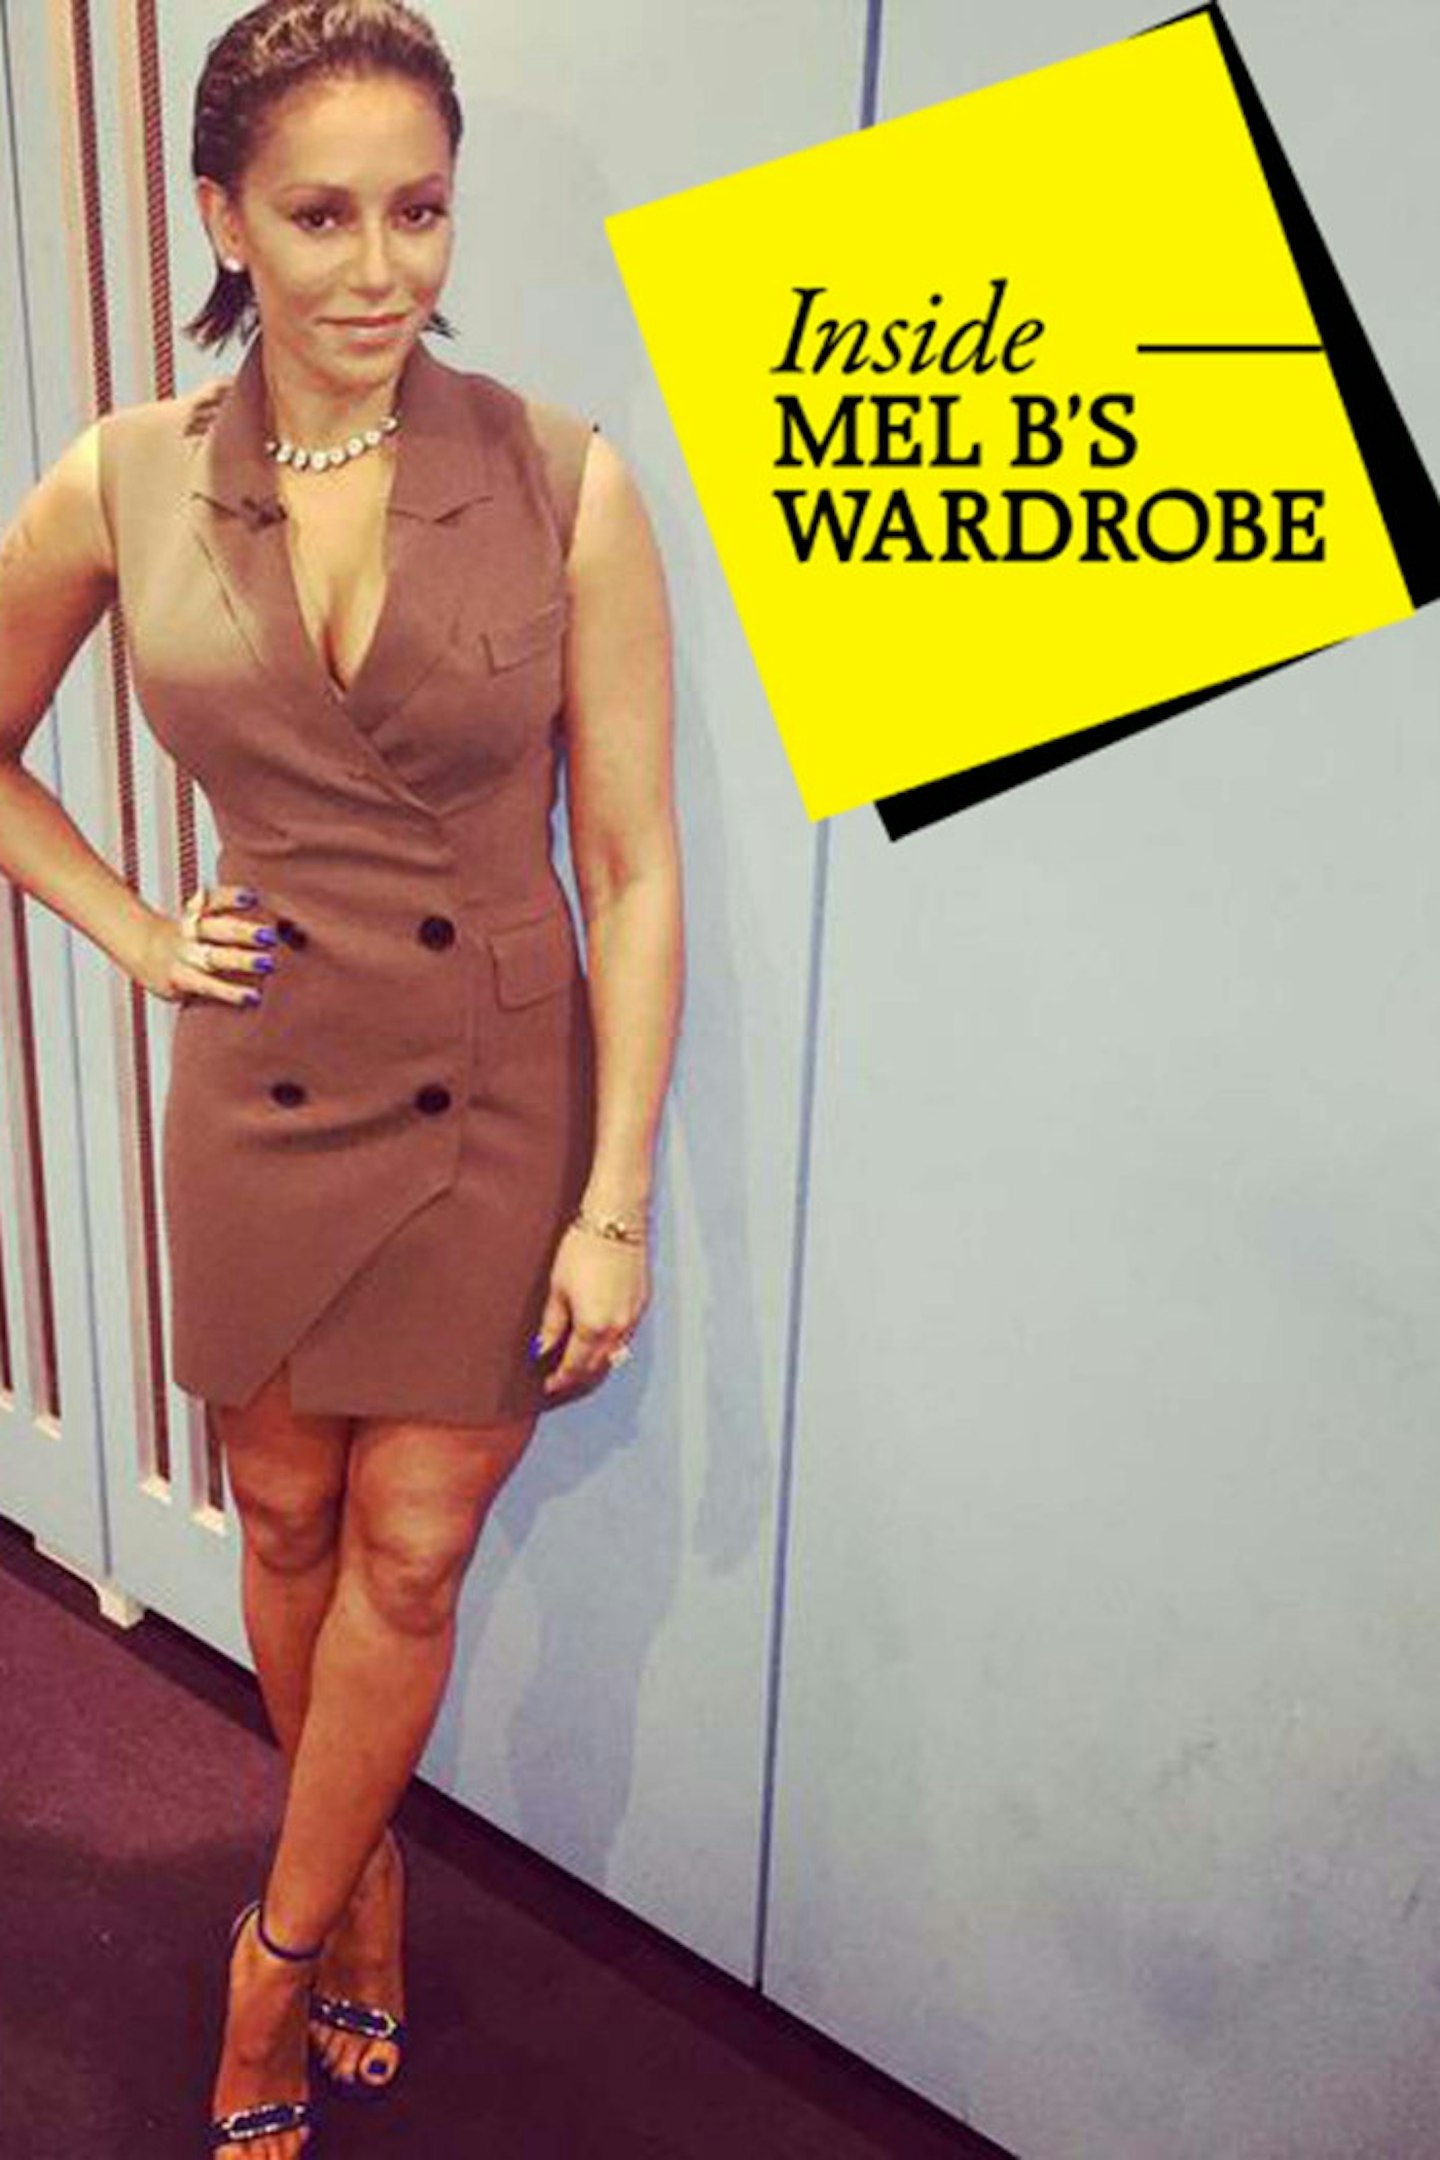 GALLERY >> Inside Mel B's X Factor Wardrobe